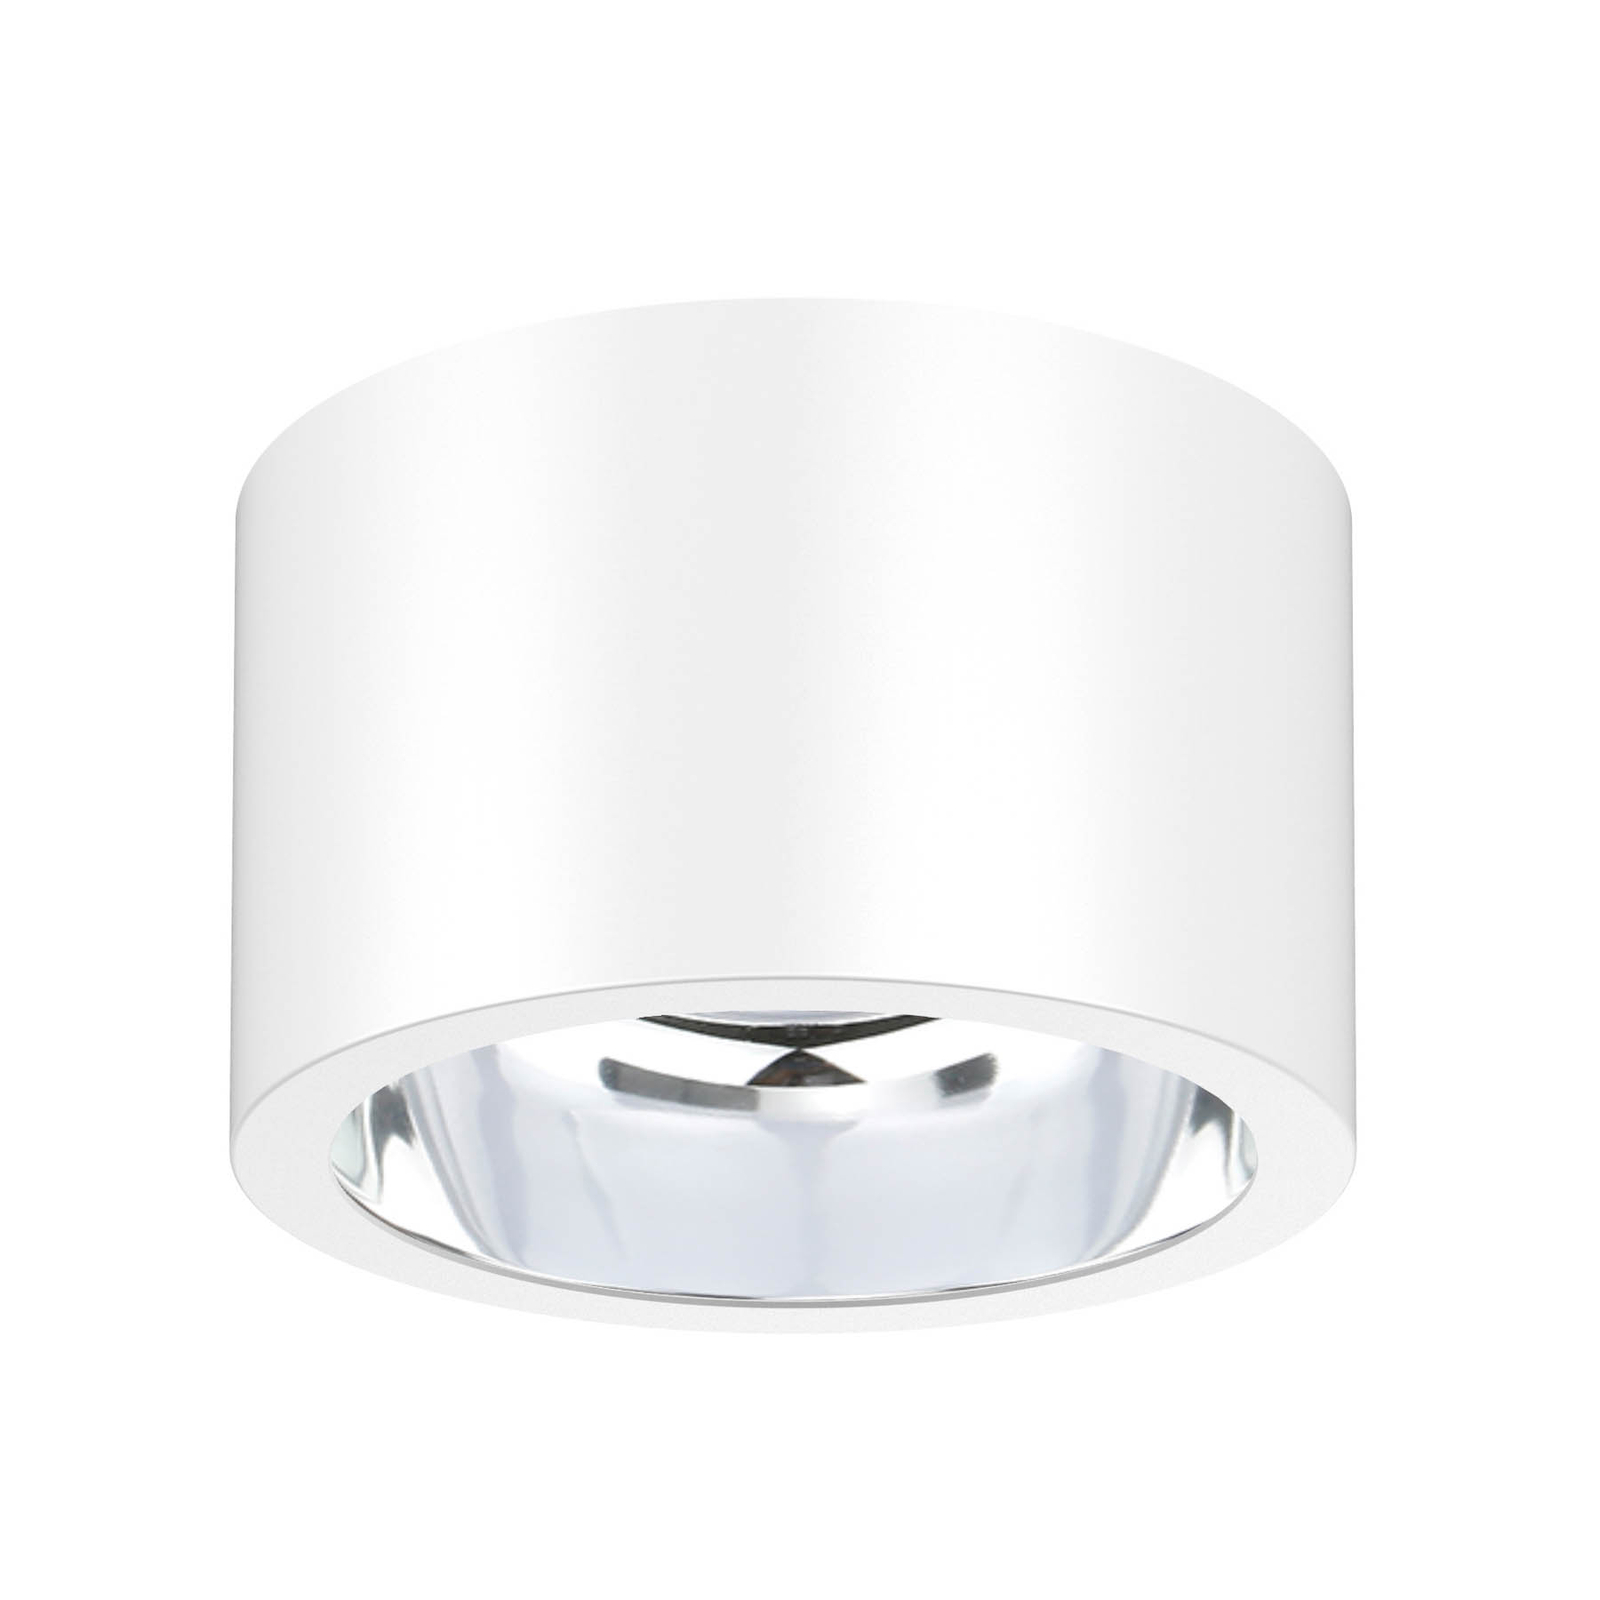 ALG54 LED ceiling spotlight, Ø 12.9 cm white